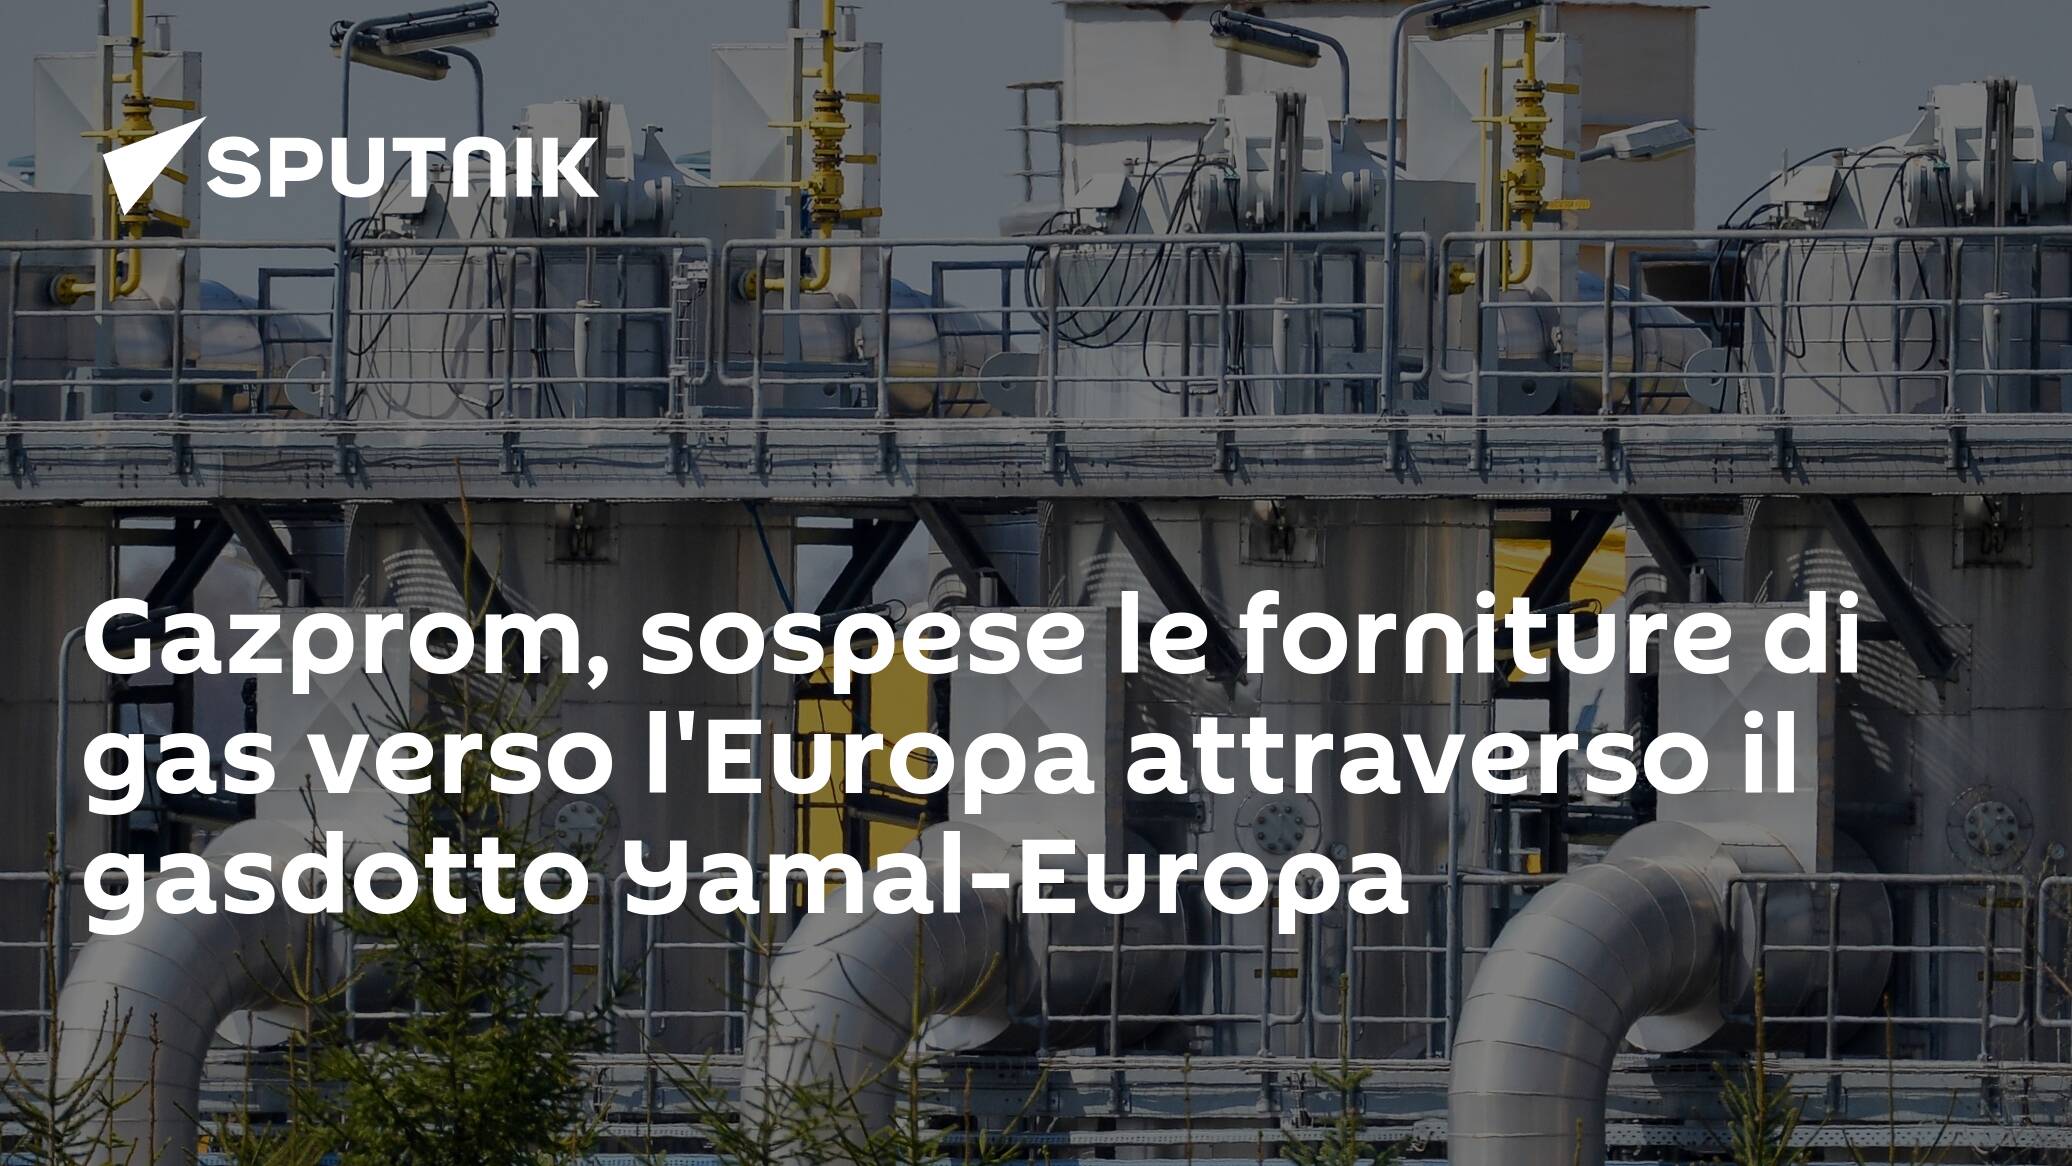 Gazprom, sospese le forniture di gas verso l'Europa attraverso il gasdotto Yamal-Europa - 22.12.2021, Sputnik Italia